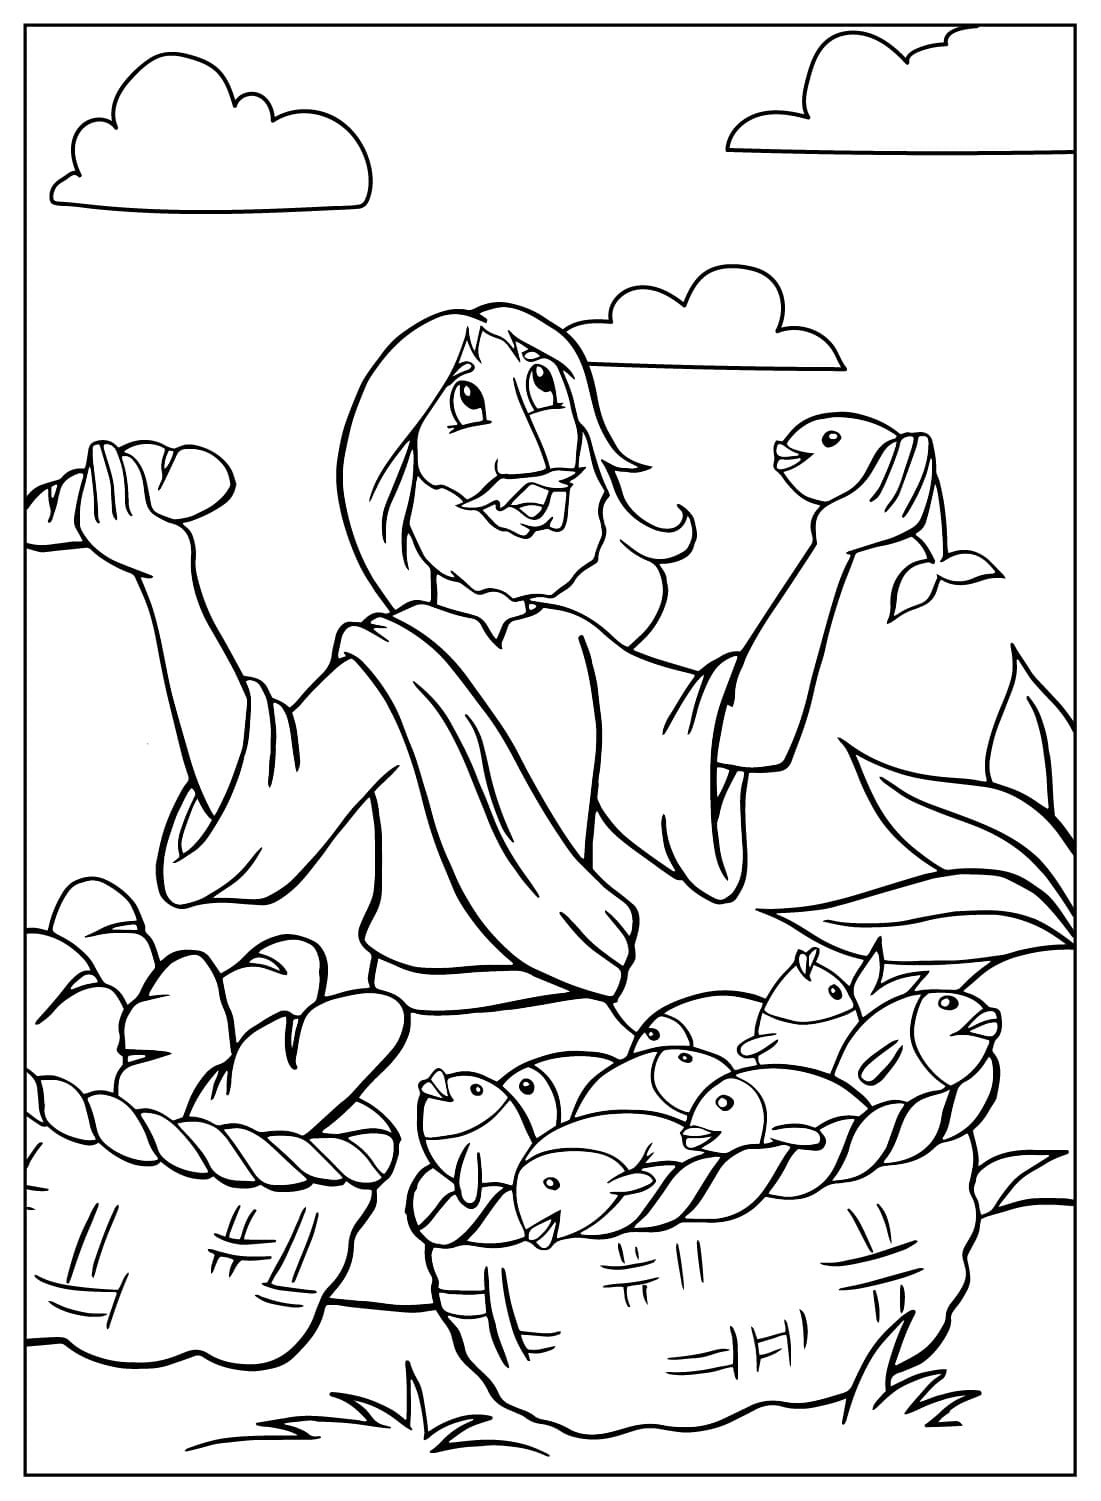 Иисус умножил раскраску хлебов от Иисуса